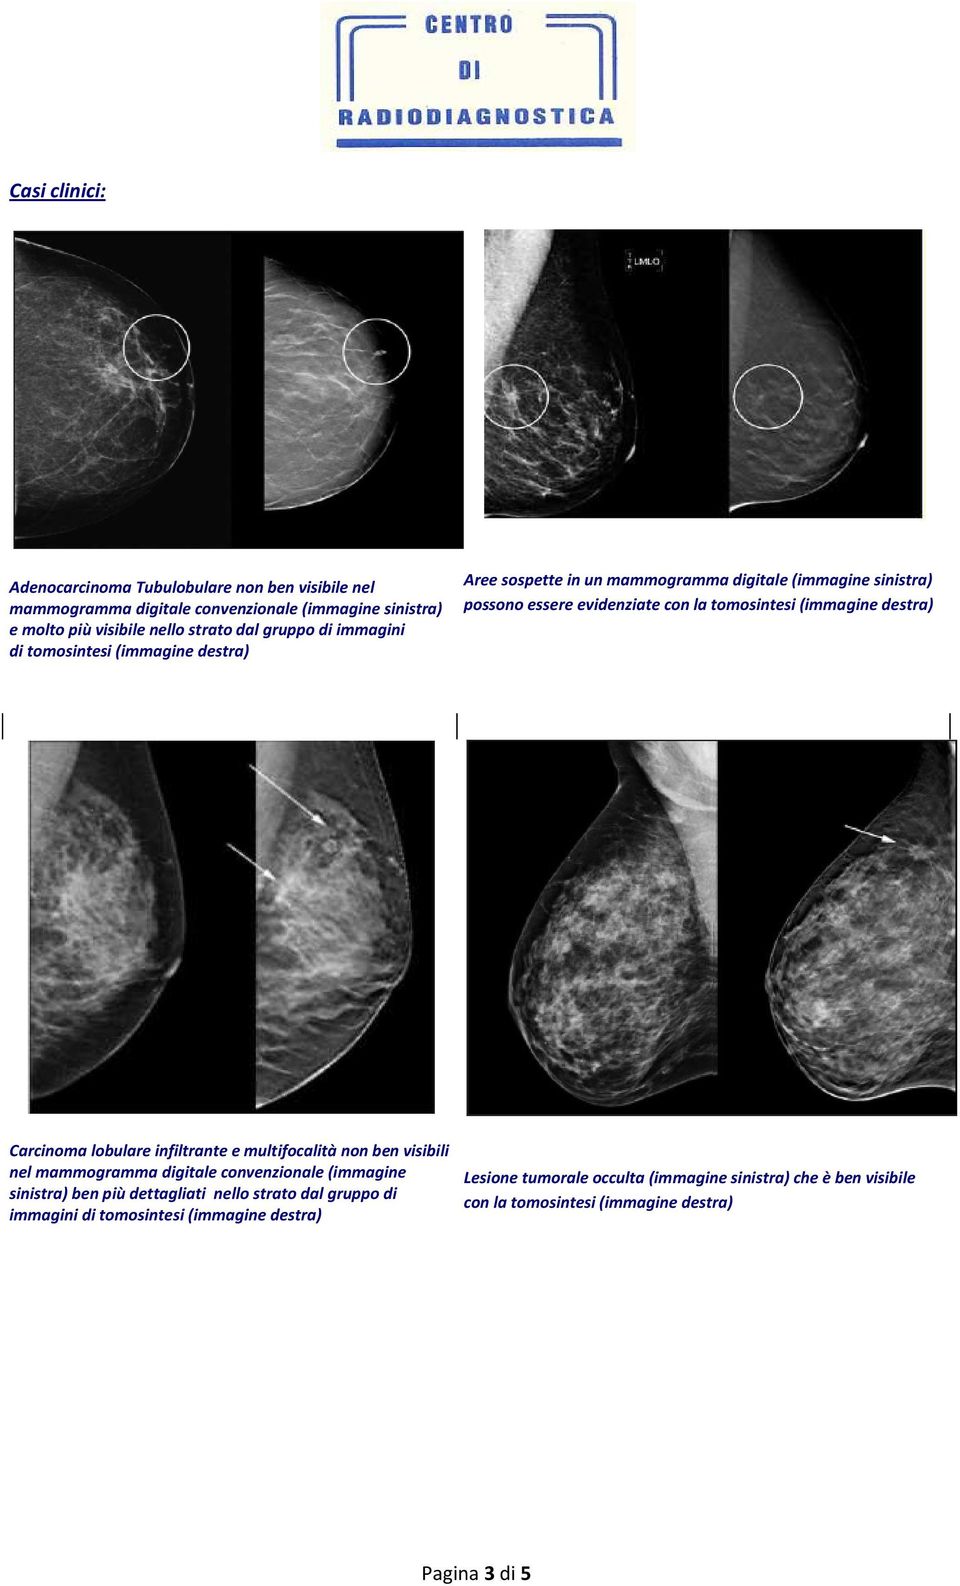 destra) Carcinoma lobulare infiltrante e multifocalità non ben visibili nel mammogramma digitale convenzionale (immagine sinistra) ben più dettagliati nello strato